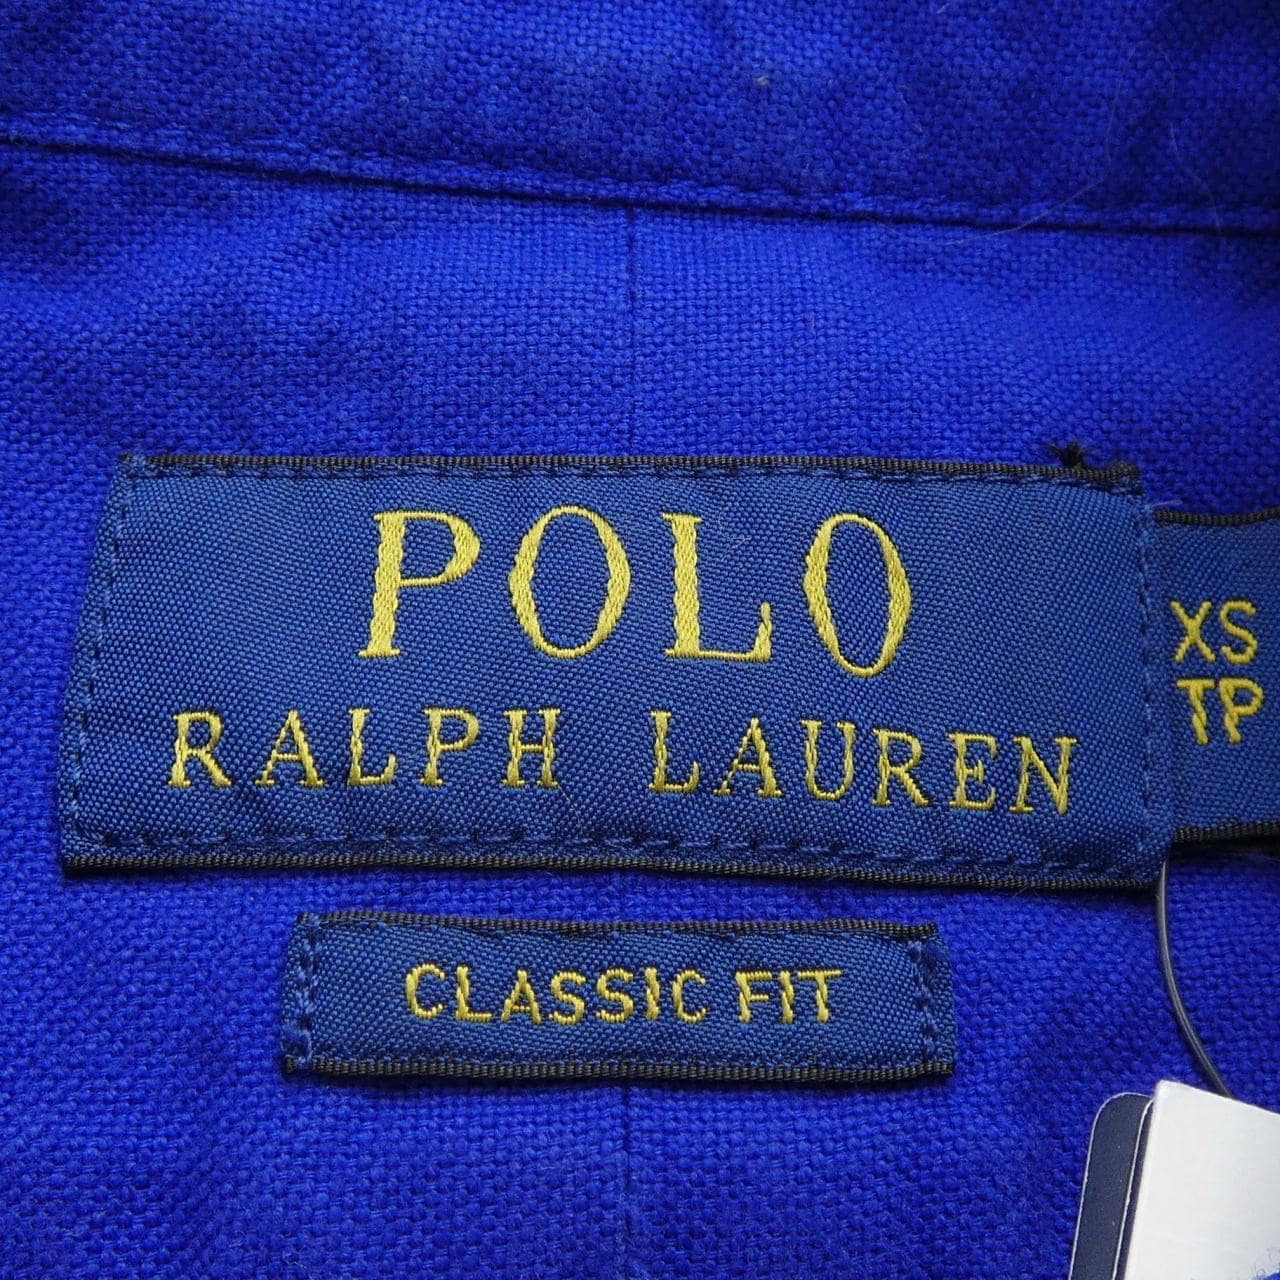 POLO LaLPH LAUREN衬衫